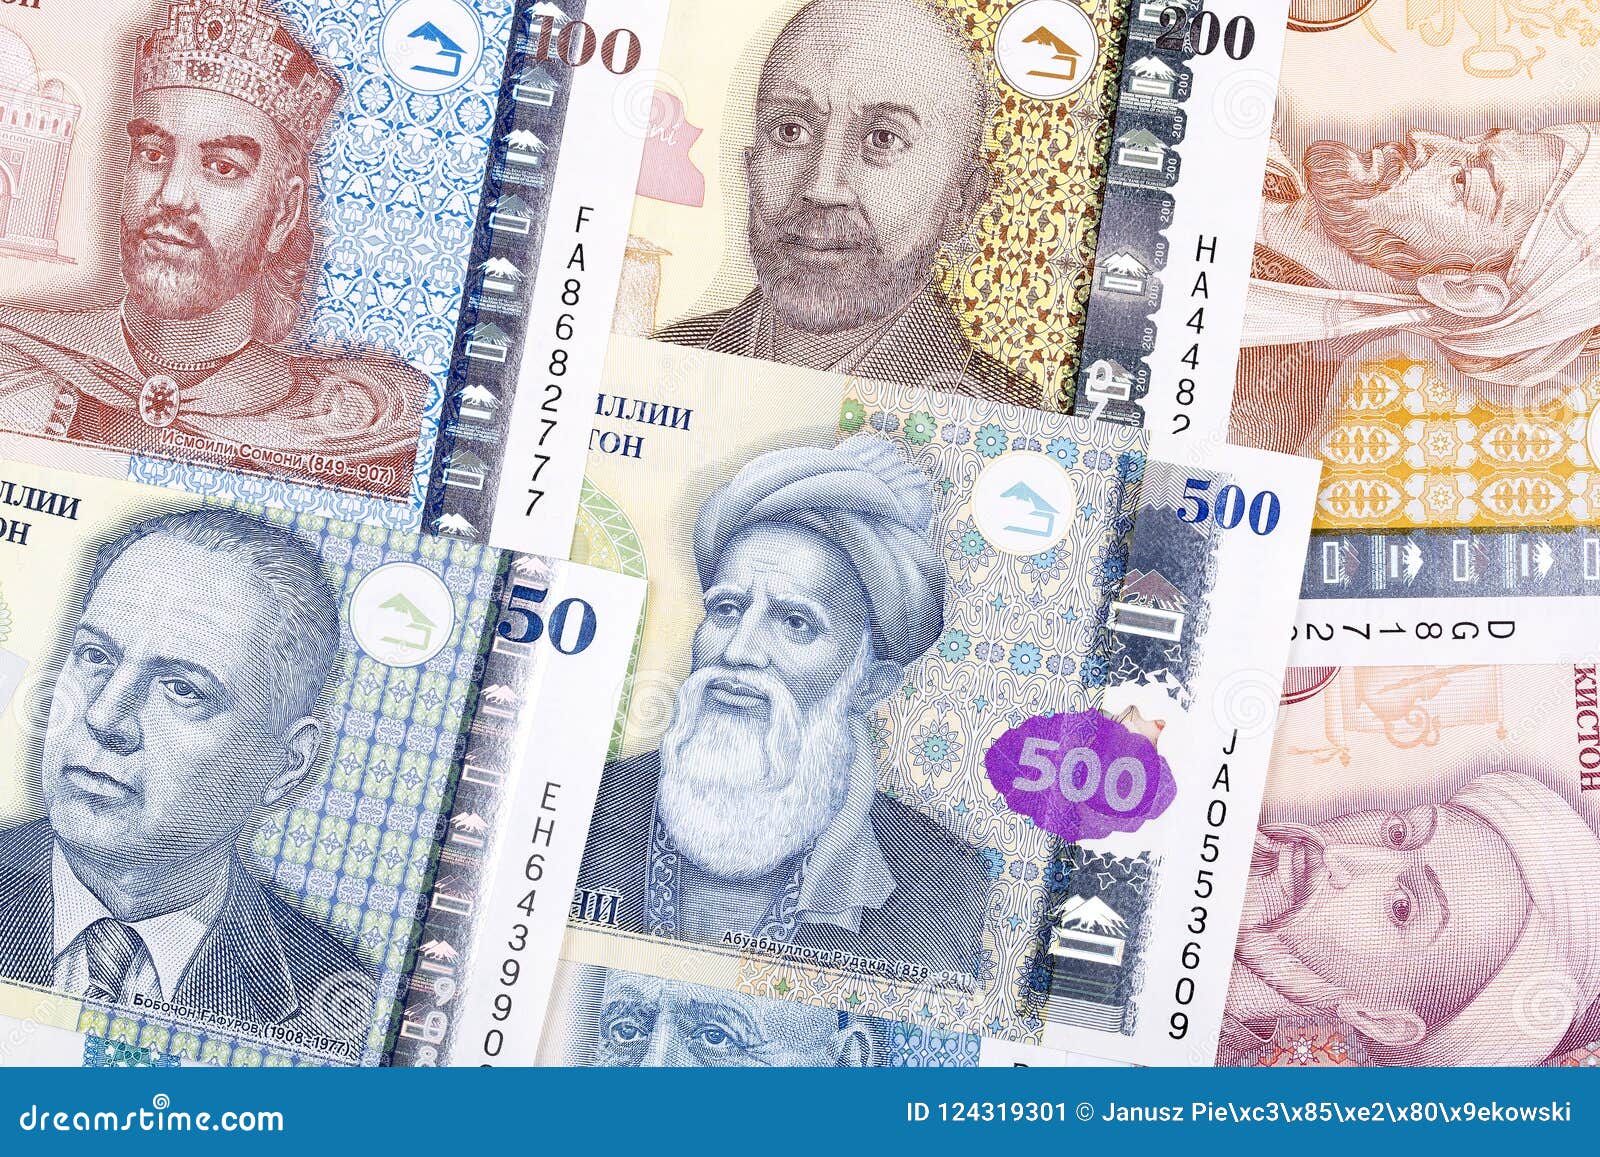 Таджикский к доллару. Деньги Таджикистана. Таджик с деньгами. Таджикская валюта. Таджикистан Сомони.